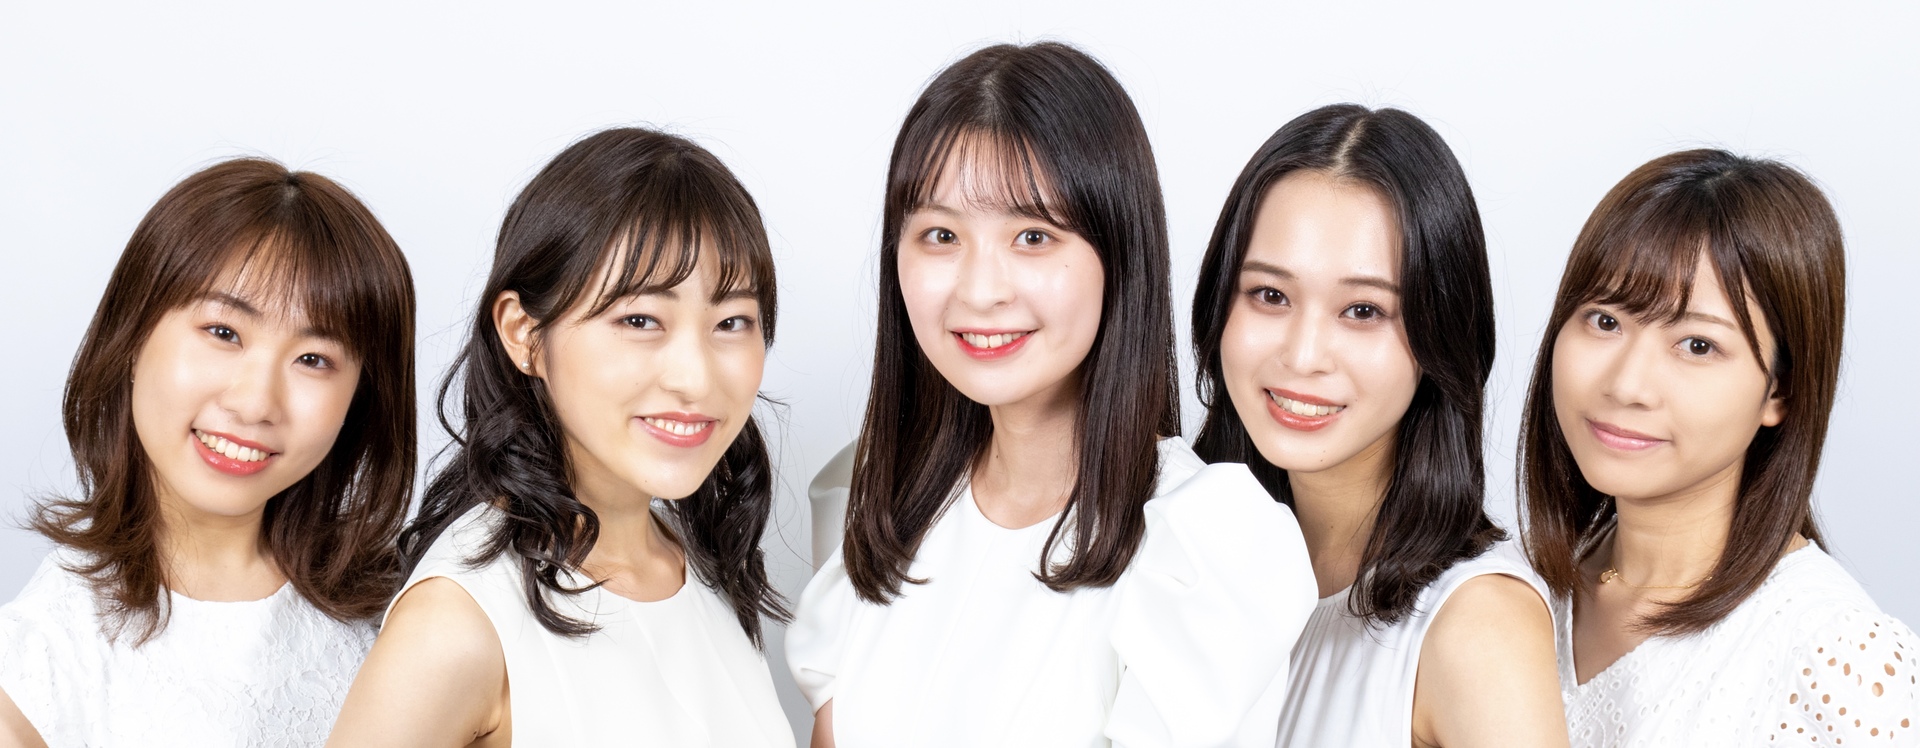 日本女子大学コンテスト21 Miscolle 全国の大学コンテスト情報を掲載する日本最大のポータルサイト